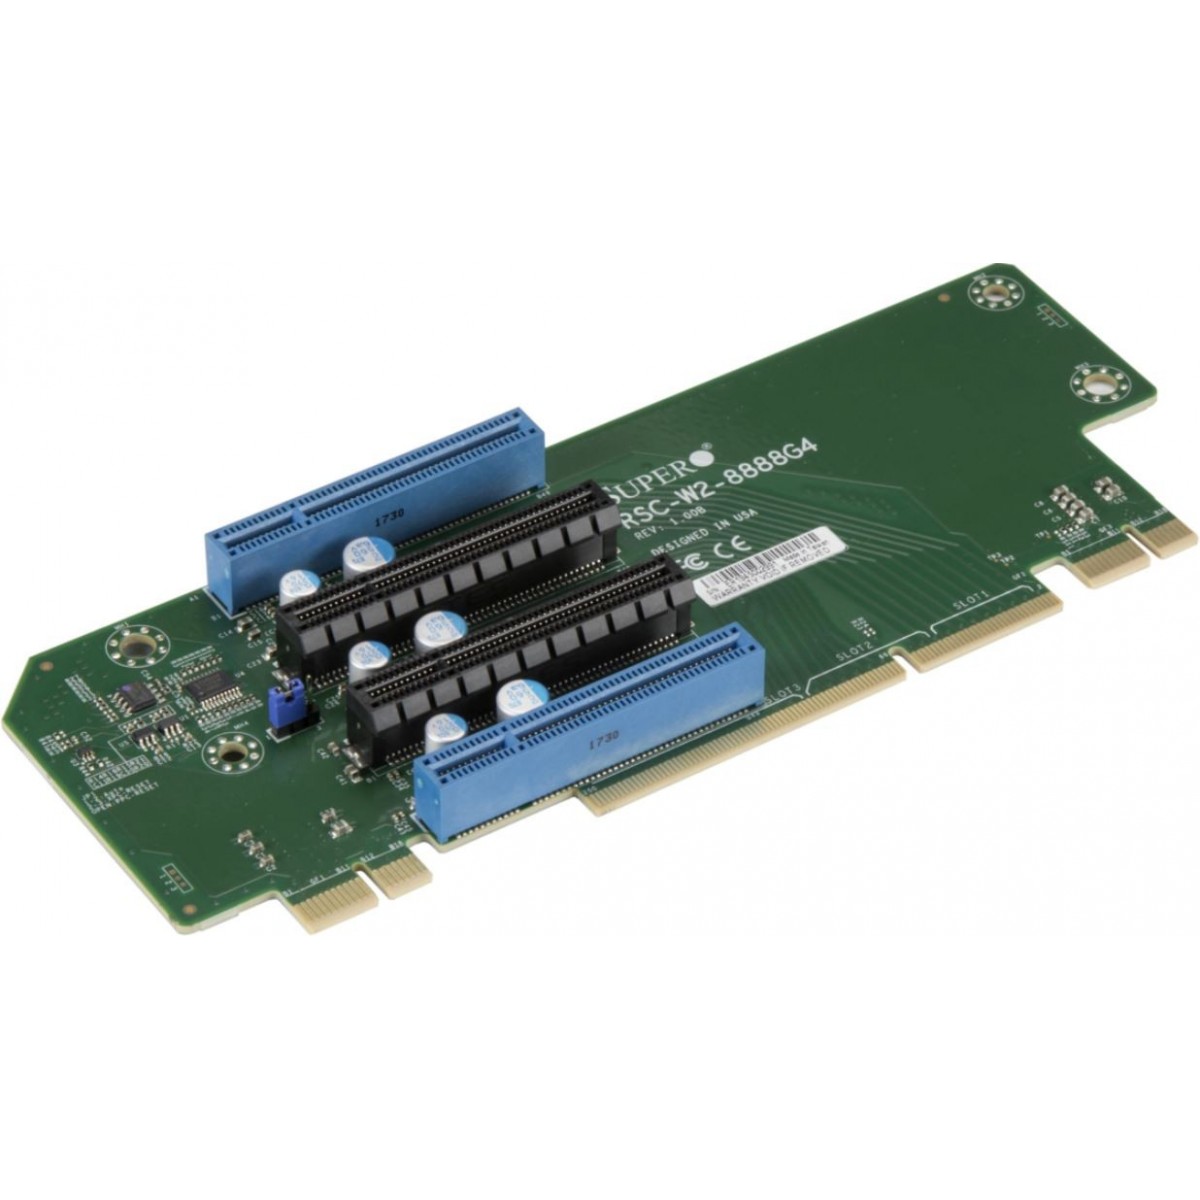 Supermicro RSC-W2-8888G4 2U LHS WIO Riser card with 4x PCI-E 4.0 x8 slots